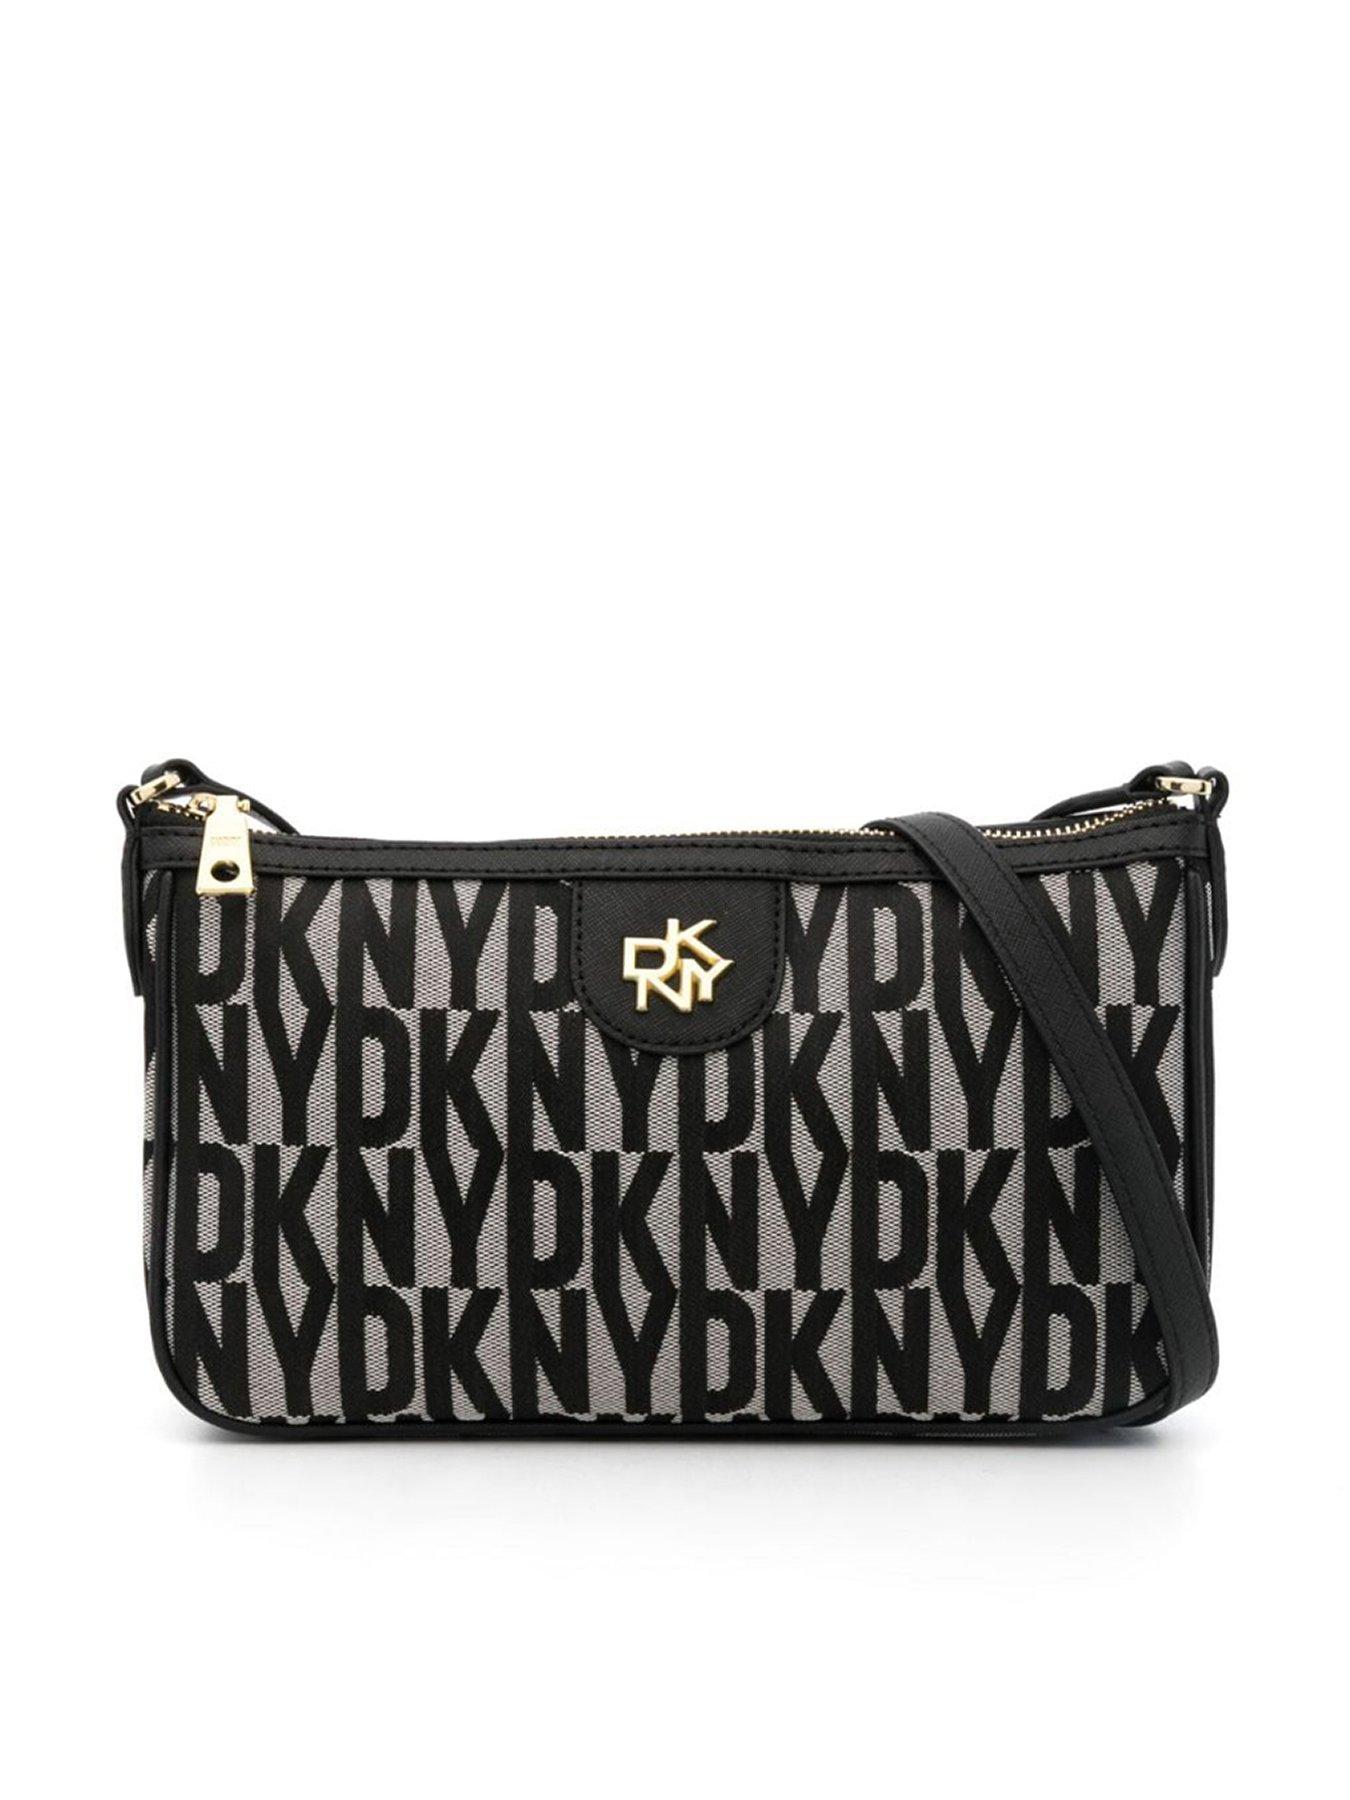 DKNY Veronica LG Shoulder Bag | Dkny bag, Shoulder bag, Bags